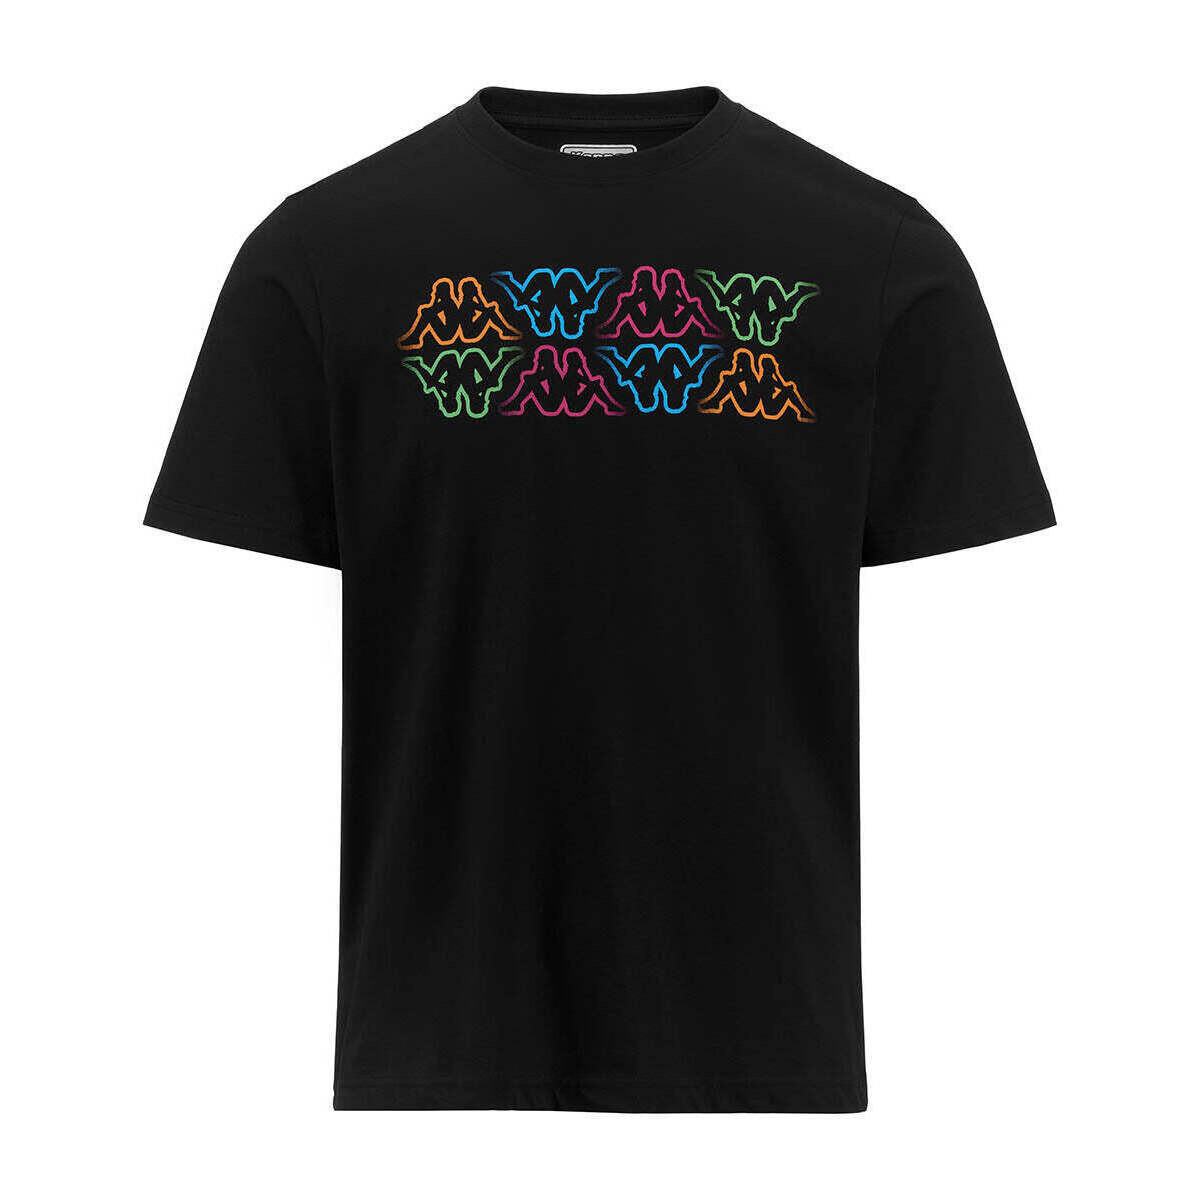 Vêtements Homme T-shirts manches courtes Kappa T-shirt Logo Fuiamo Noir